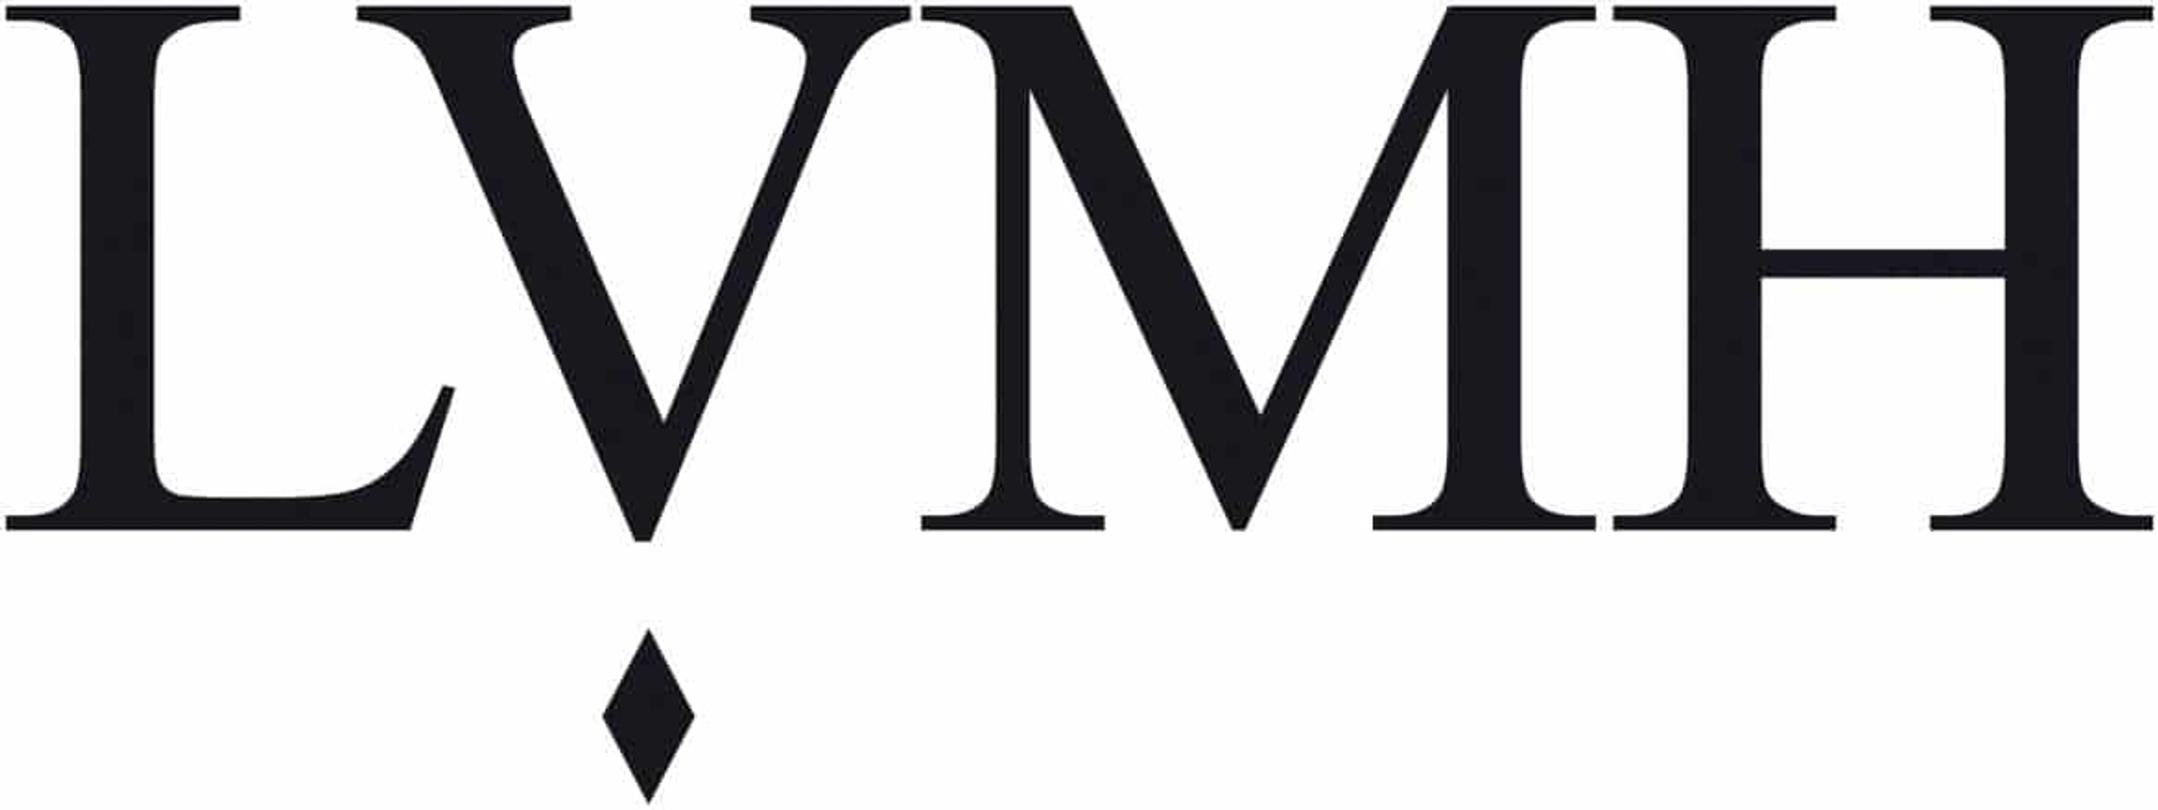 LVMH: Marque du groupe LVMH, Louis Vuitton, Château d'Yquem, LVMH - Moët  Hennessy Louis Vuitton, Dom Pérignon, Bernard Arnault, La Samaritaine  (French Edition) - Source Wikipedia: 9781159577612 - AbeBooks